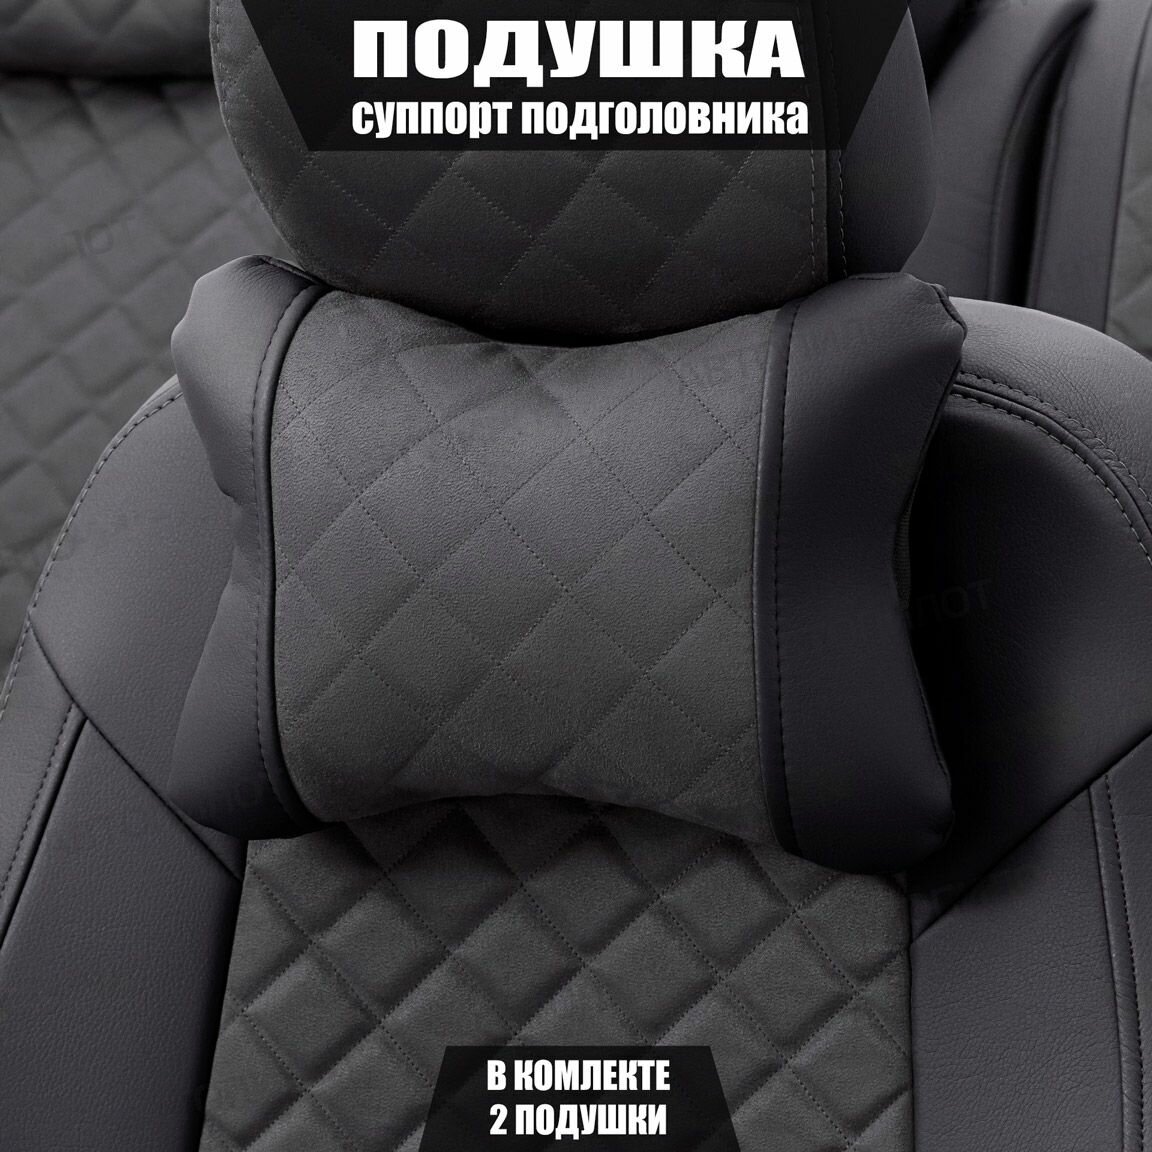 Подушки под шею (суппорт подголовника) для Шевроле Авео (2002 - 2011) седан / Chevrolet Aveo, Ромб, Алькантара, 2 подушки, Черный и темно-серый